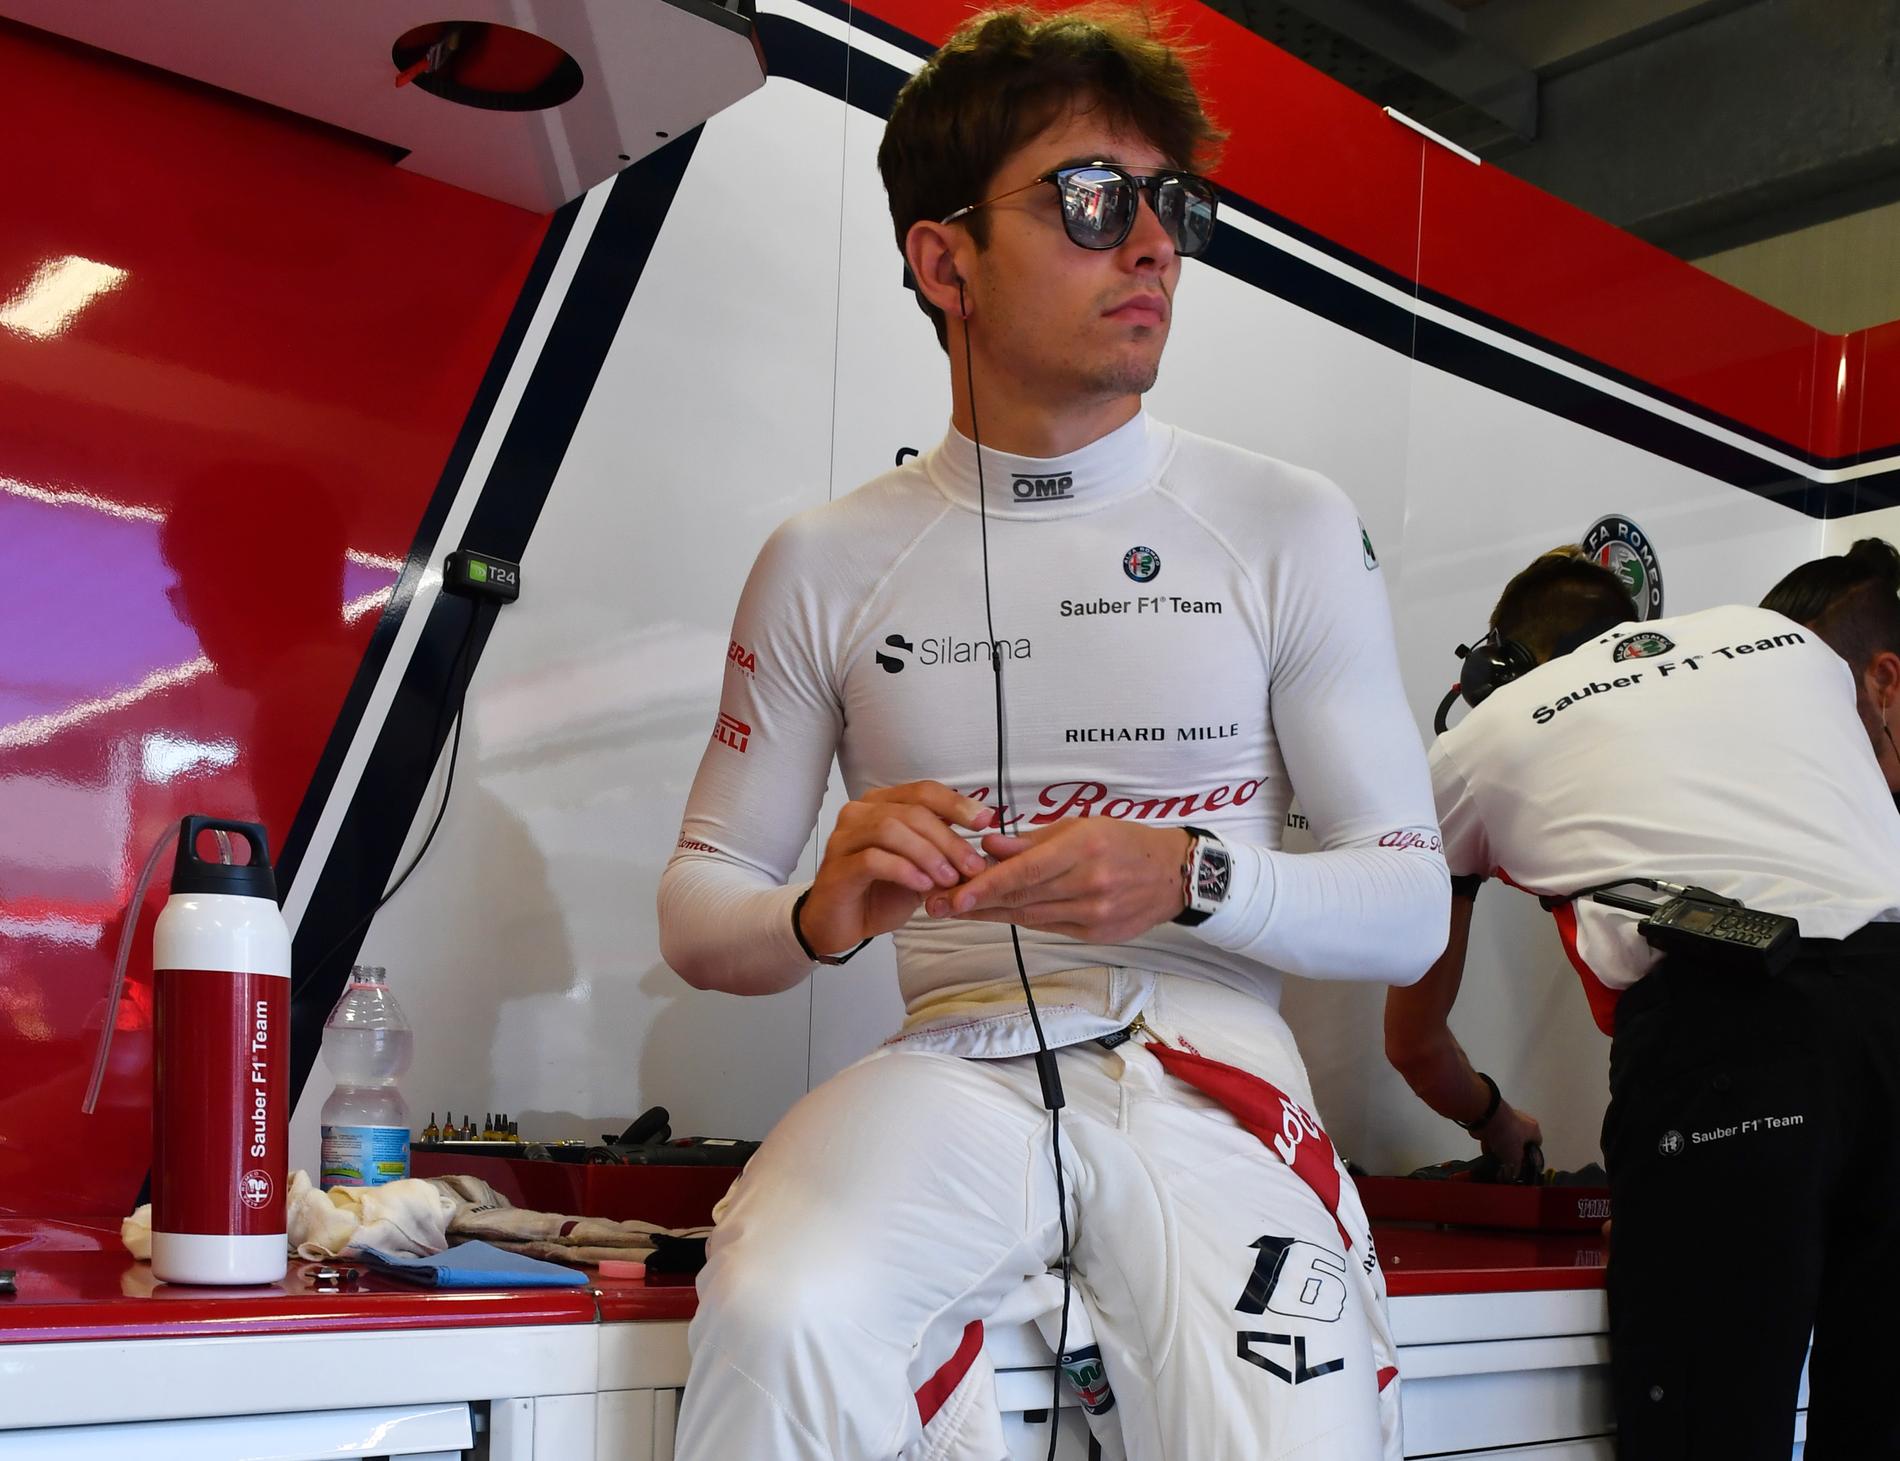 Kör Charles Leclerc F1 för Ferrari 2019?